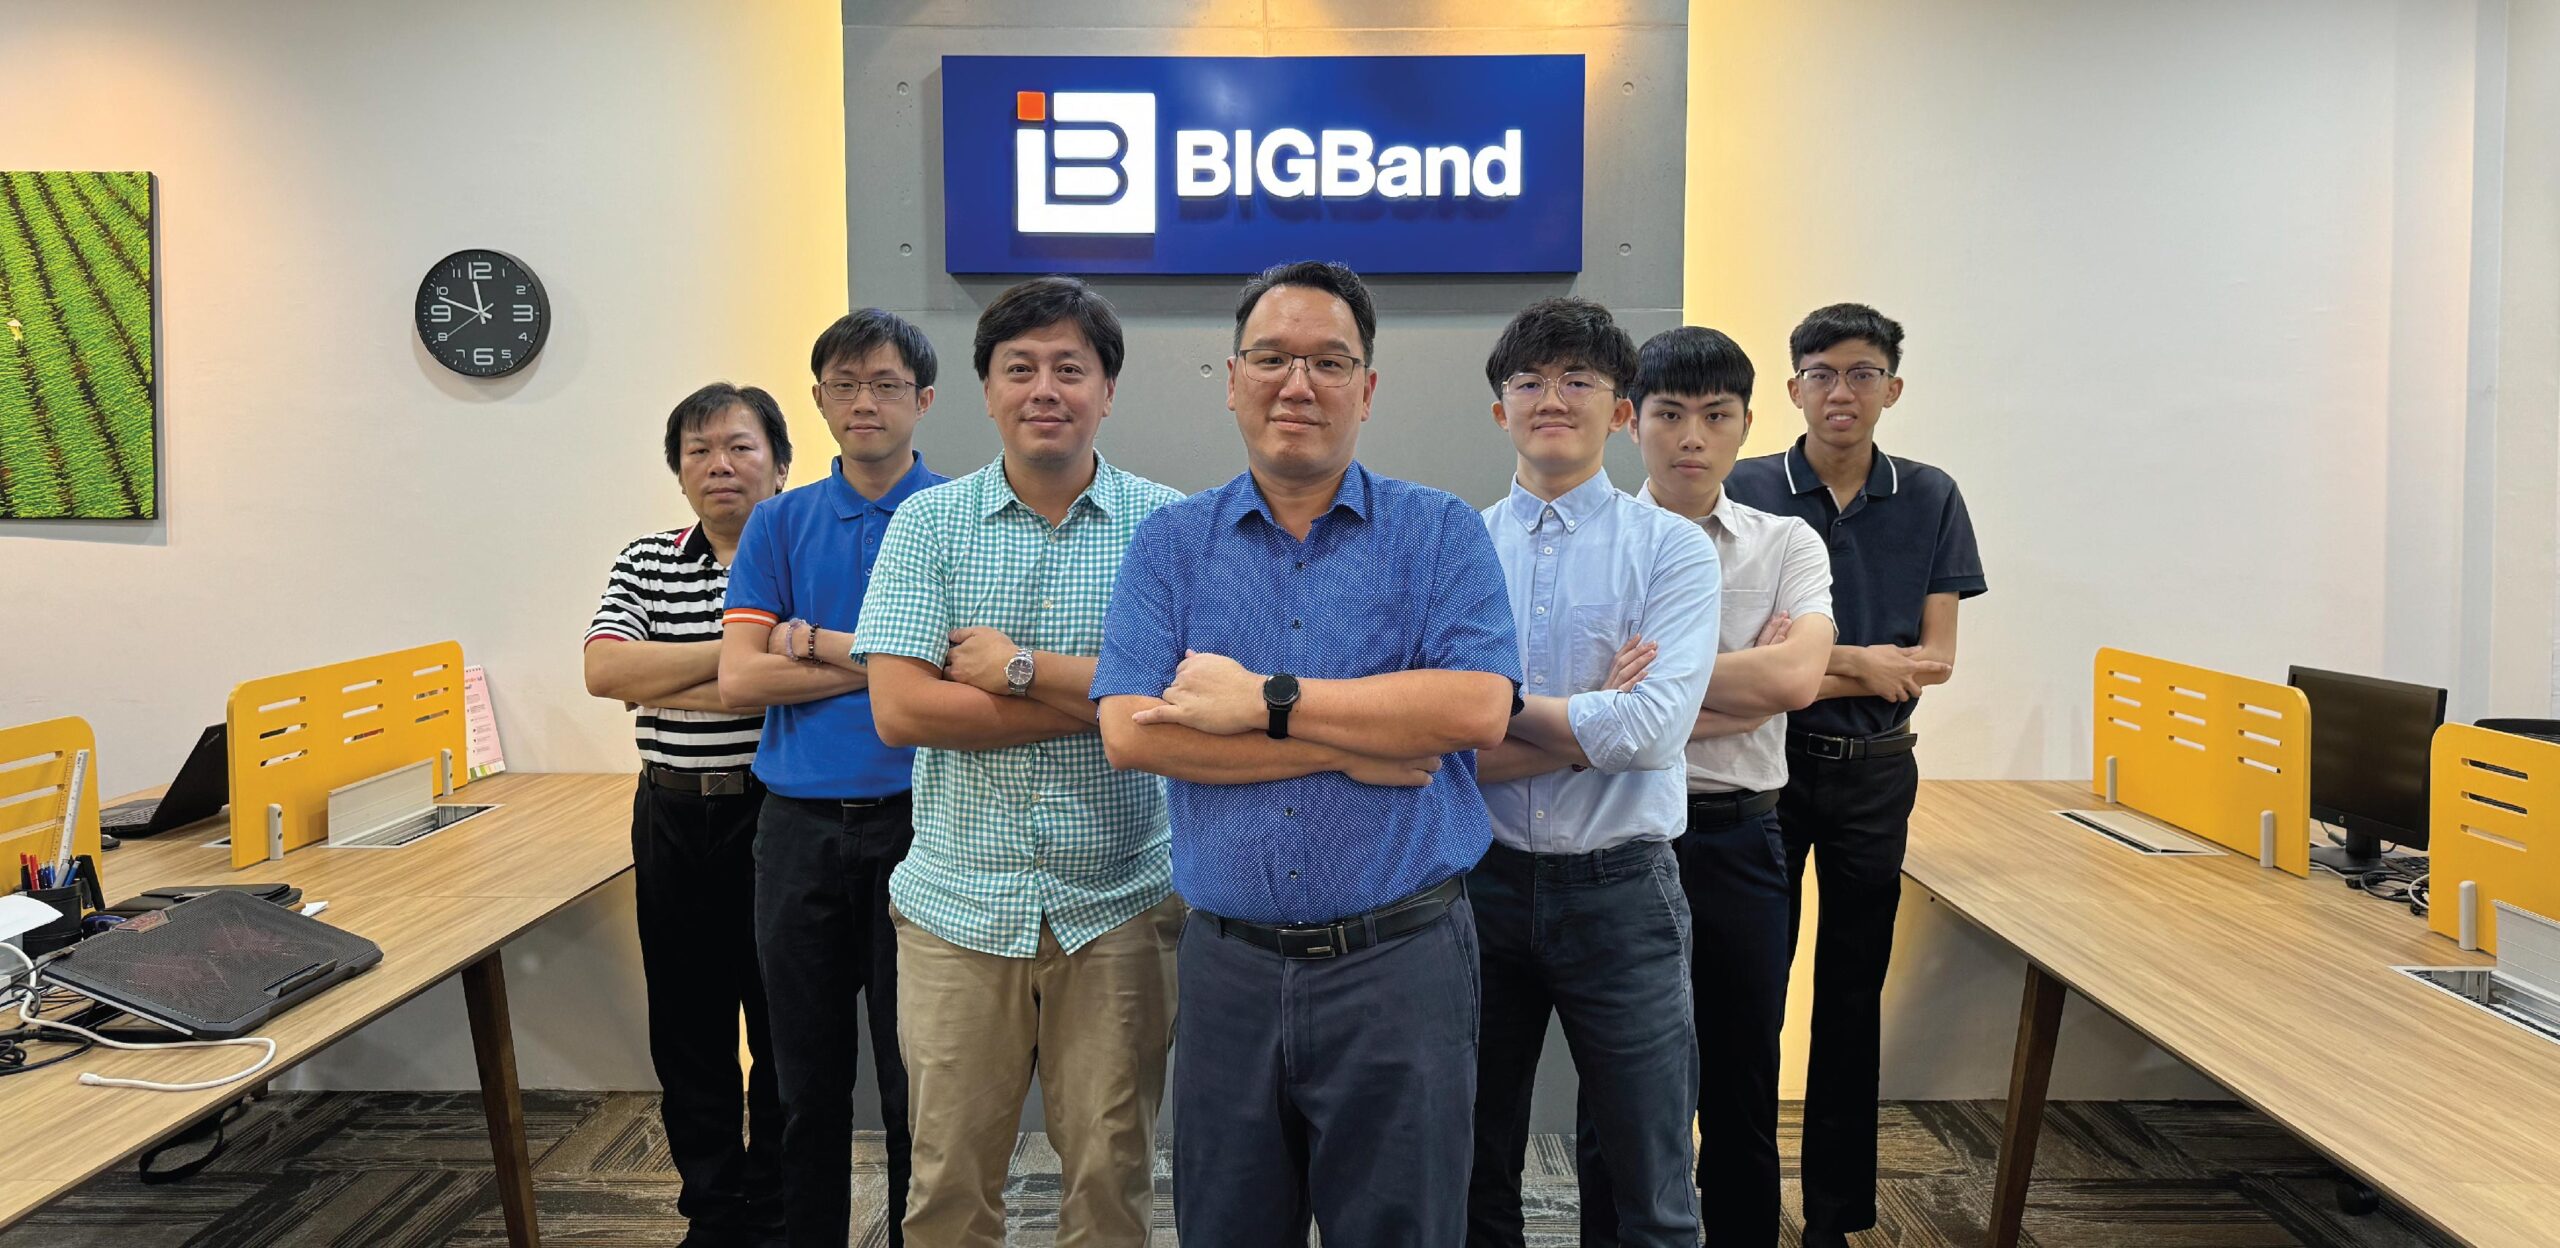 Bigband_website-04